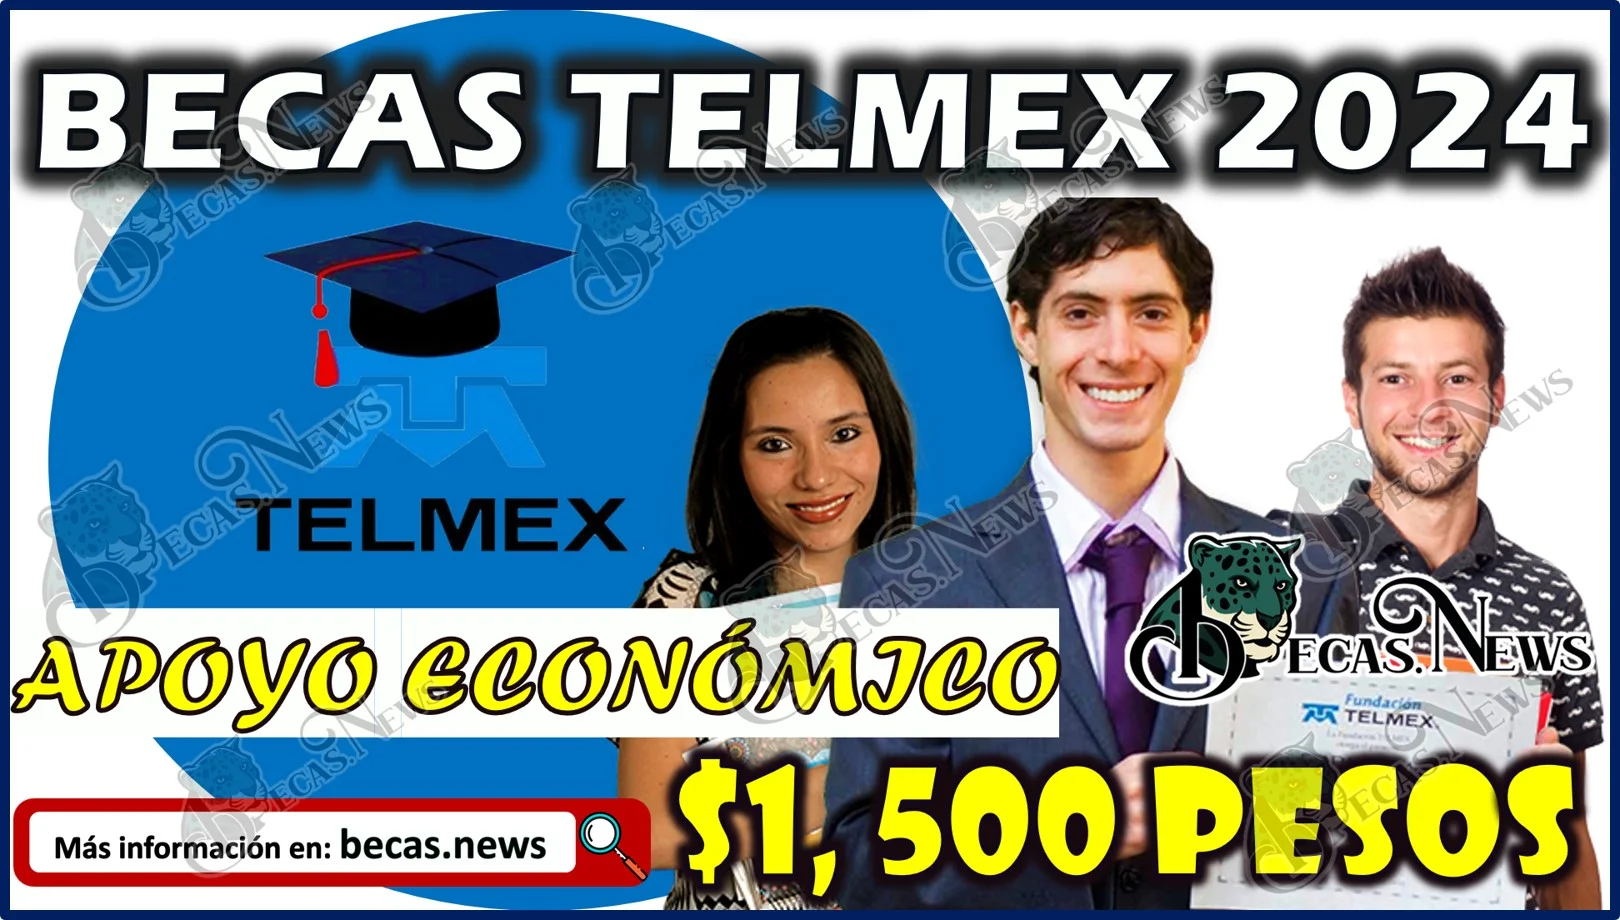 Becas Telmex 2024 ¡Recibe un apoyo de $1,500 pesos!  Estos son los requisitos